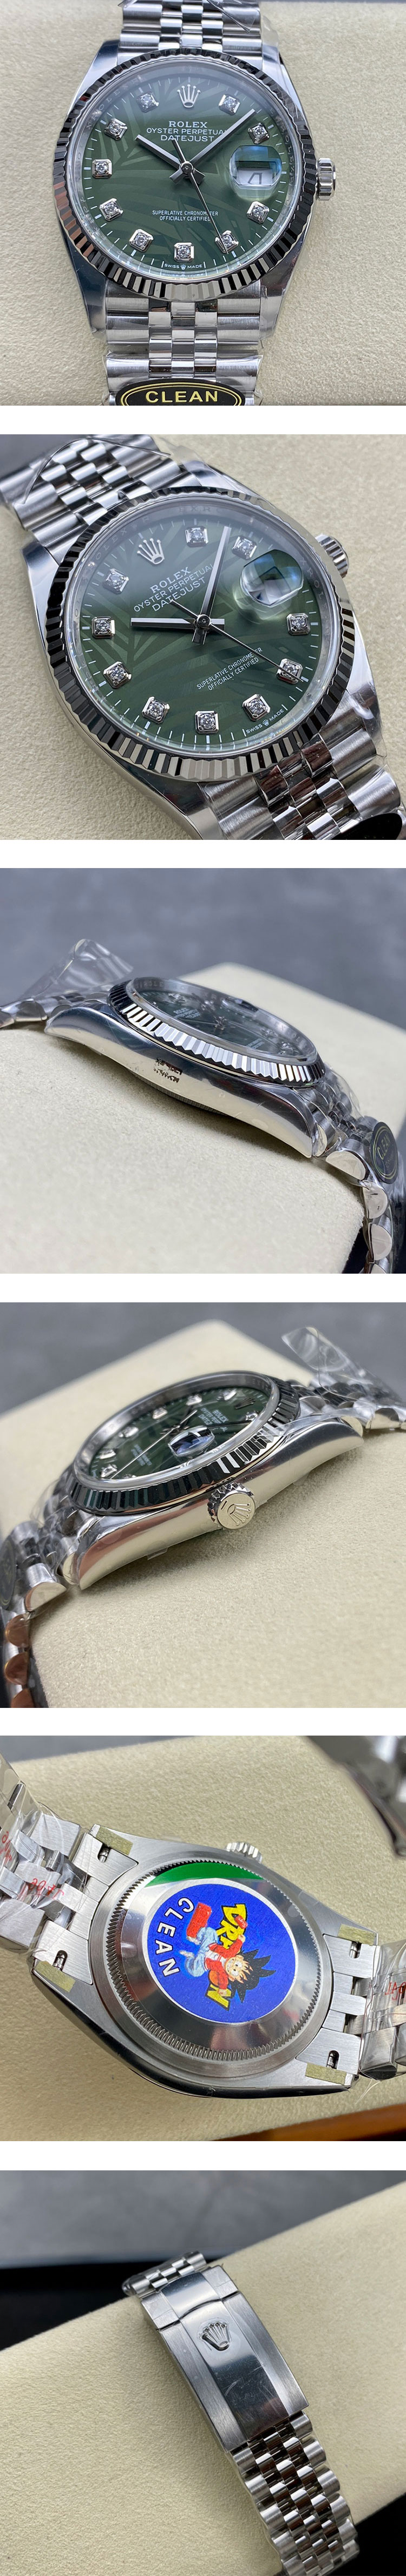 CLEAN製 ロレックススーパーコピー時計 デイトジャストM126234-0055 グリーンパーム 36mm 3235自動巻き